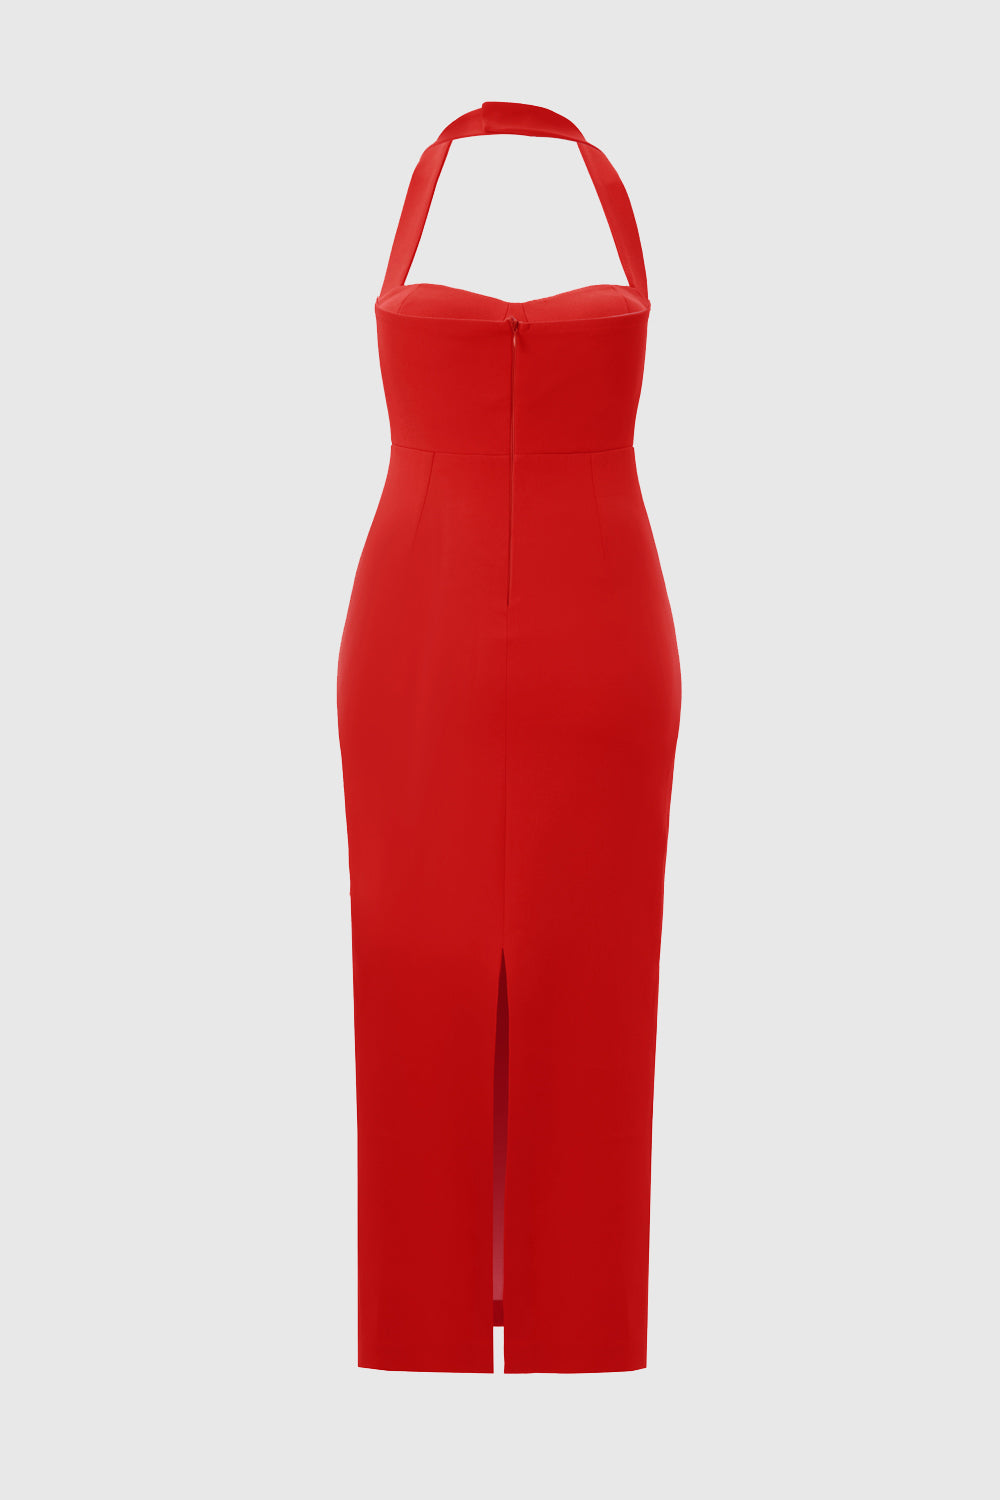 Zoa Red Bustier Midi Dress